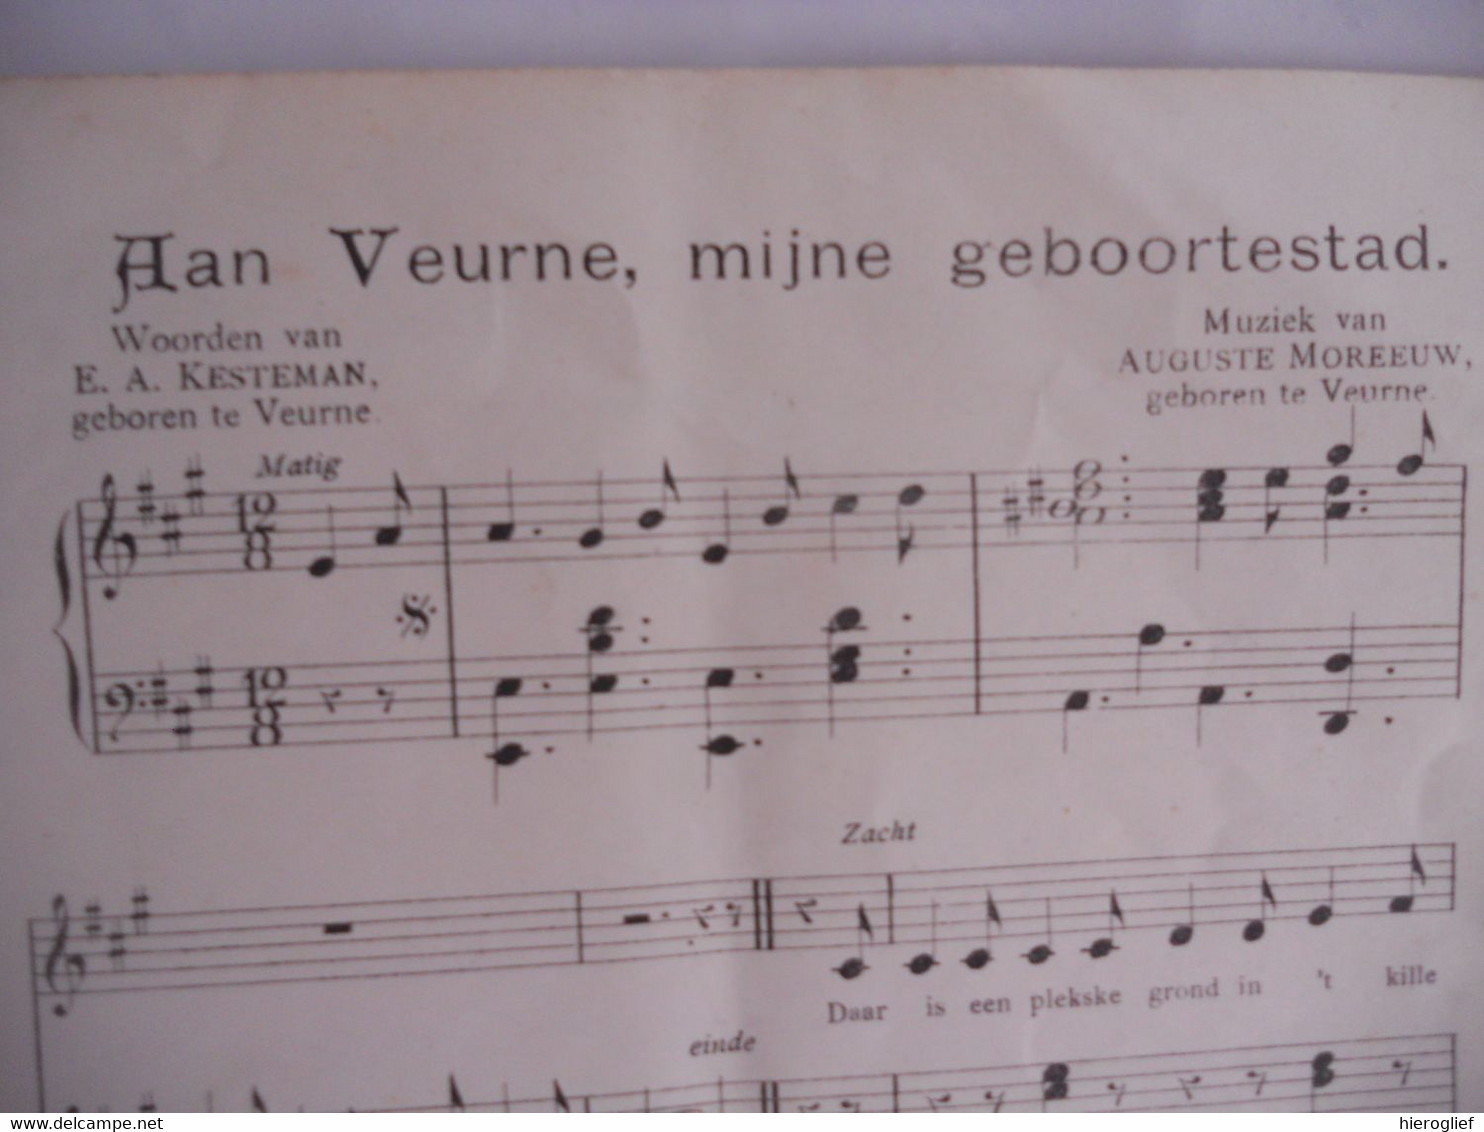 Twaalf Vlaamsche Liederen - Muziek van Auguste Moreeuw Brugge muziek tekst De Bo Kesteman Veurne Devos zang Vlaanderen